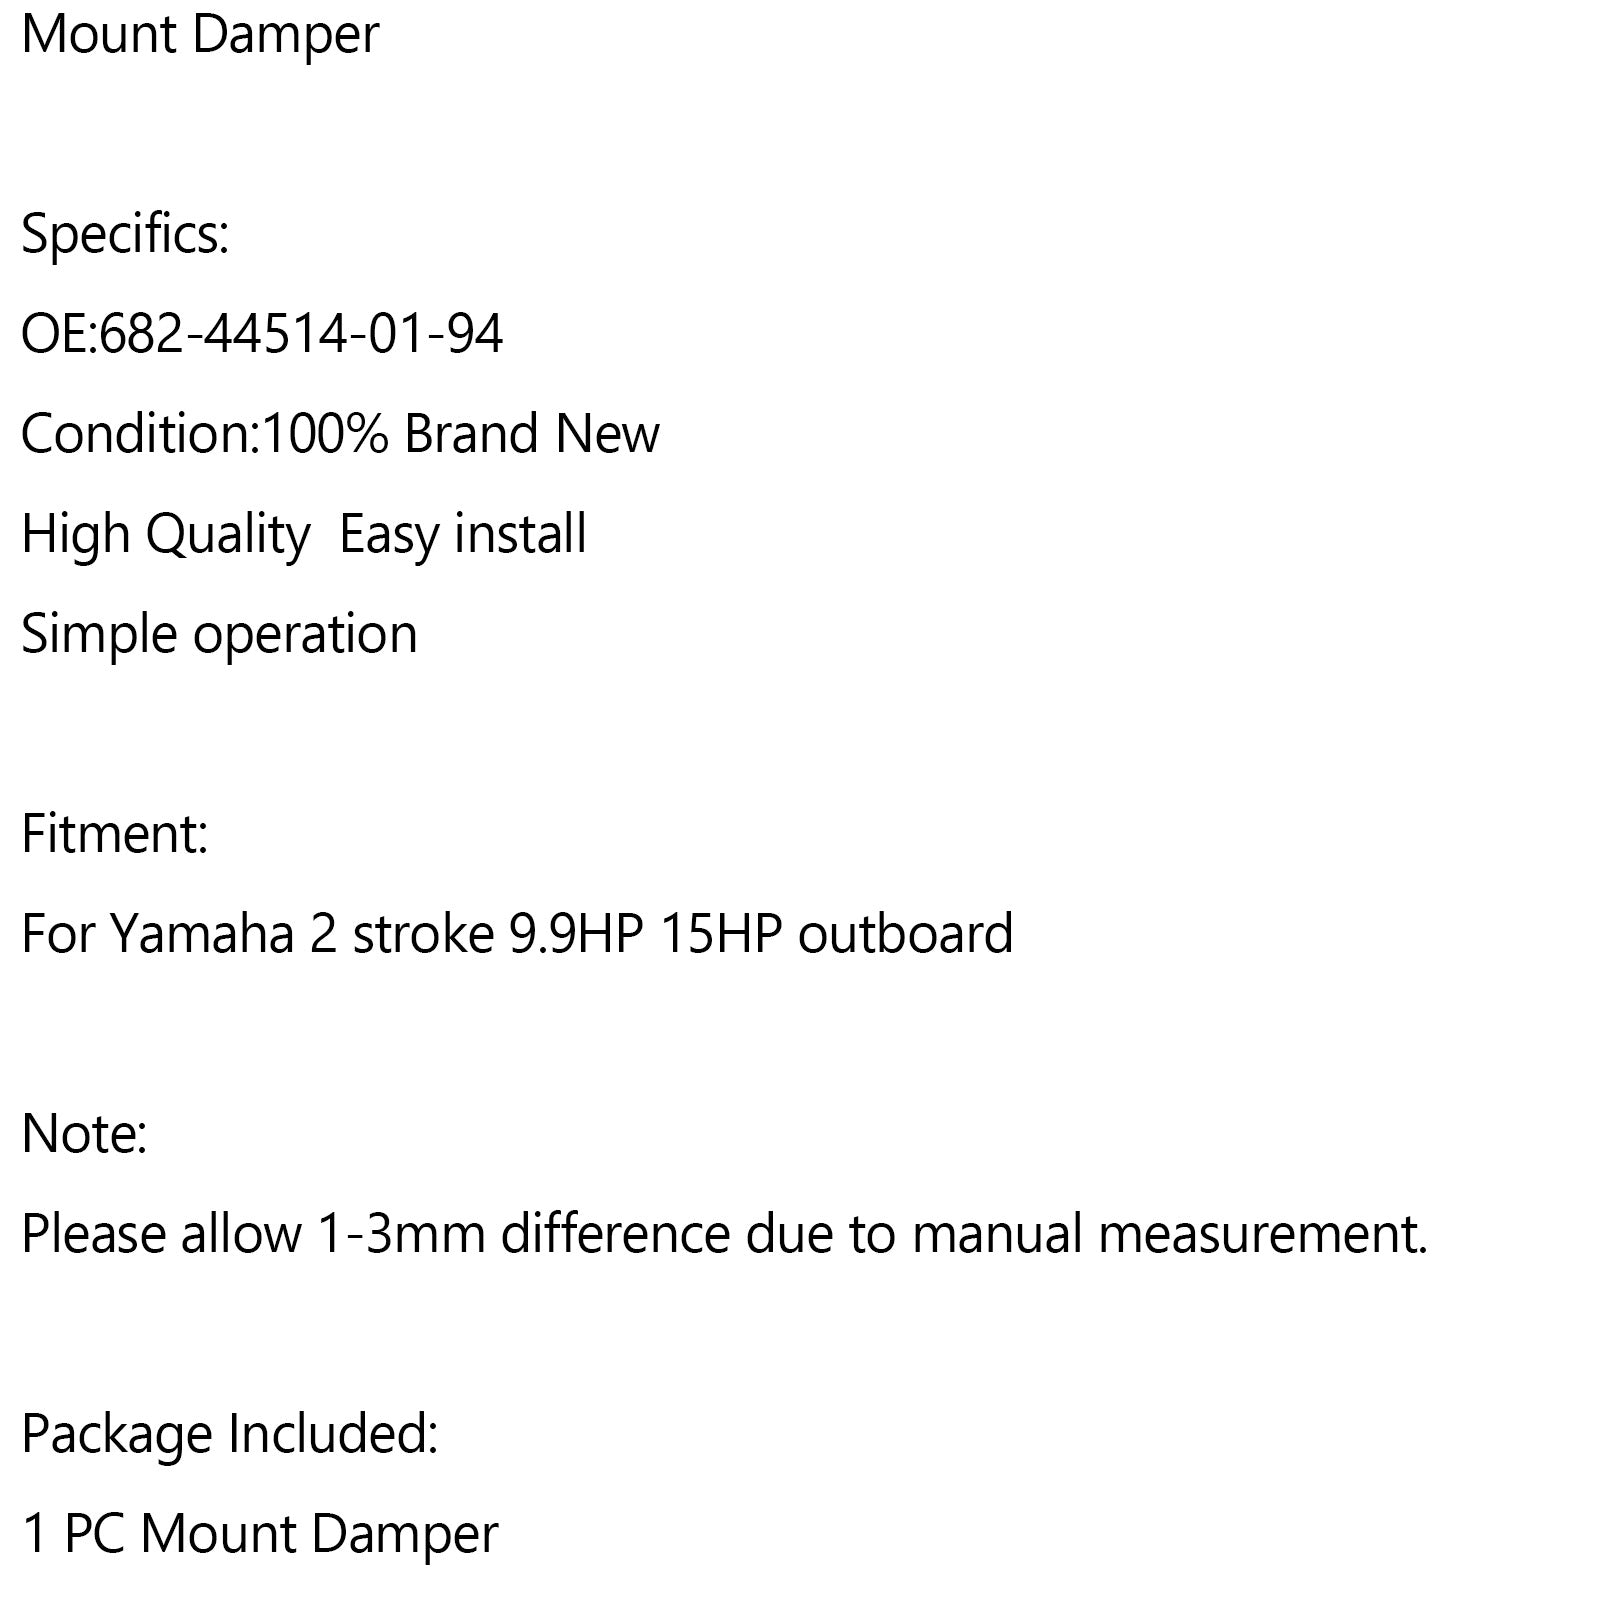 682-44514-01-94 Upper side mount damper for YAMAHA 2 stroke 9.9HP 15HP outboard